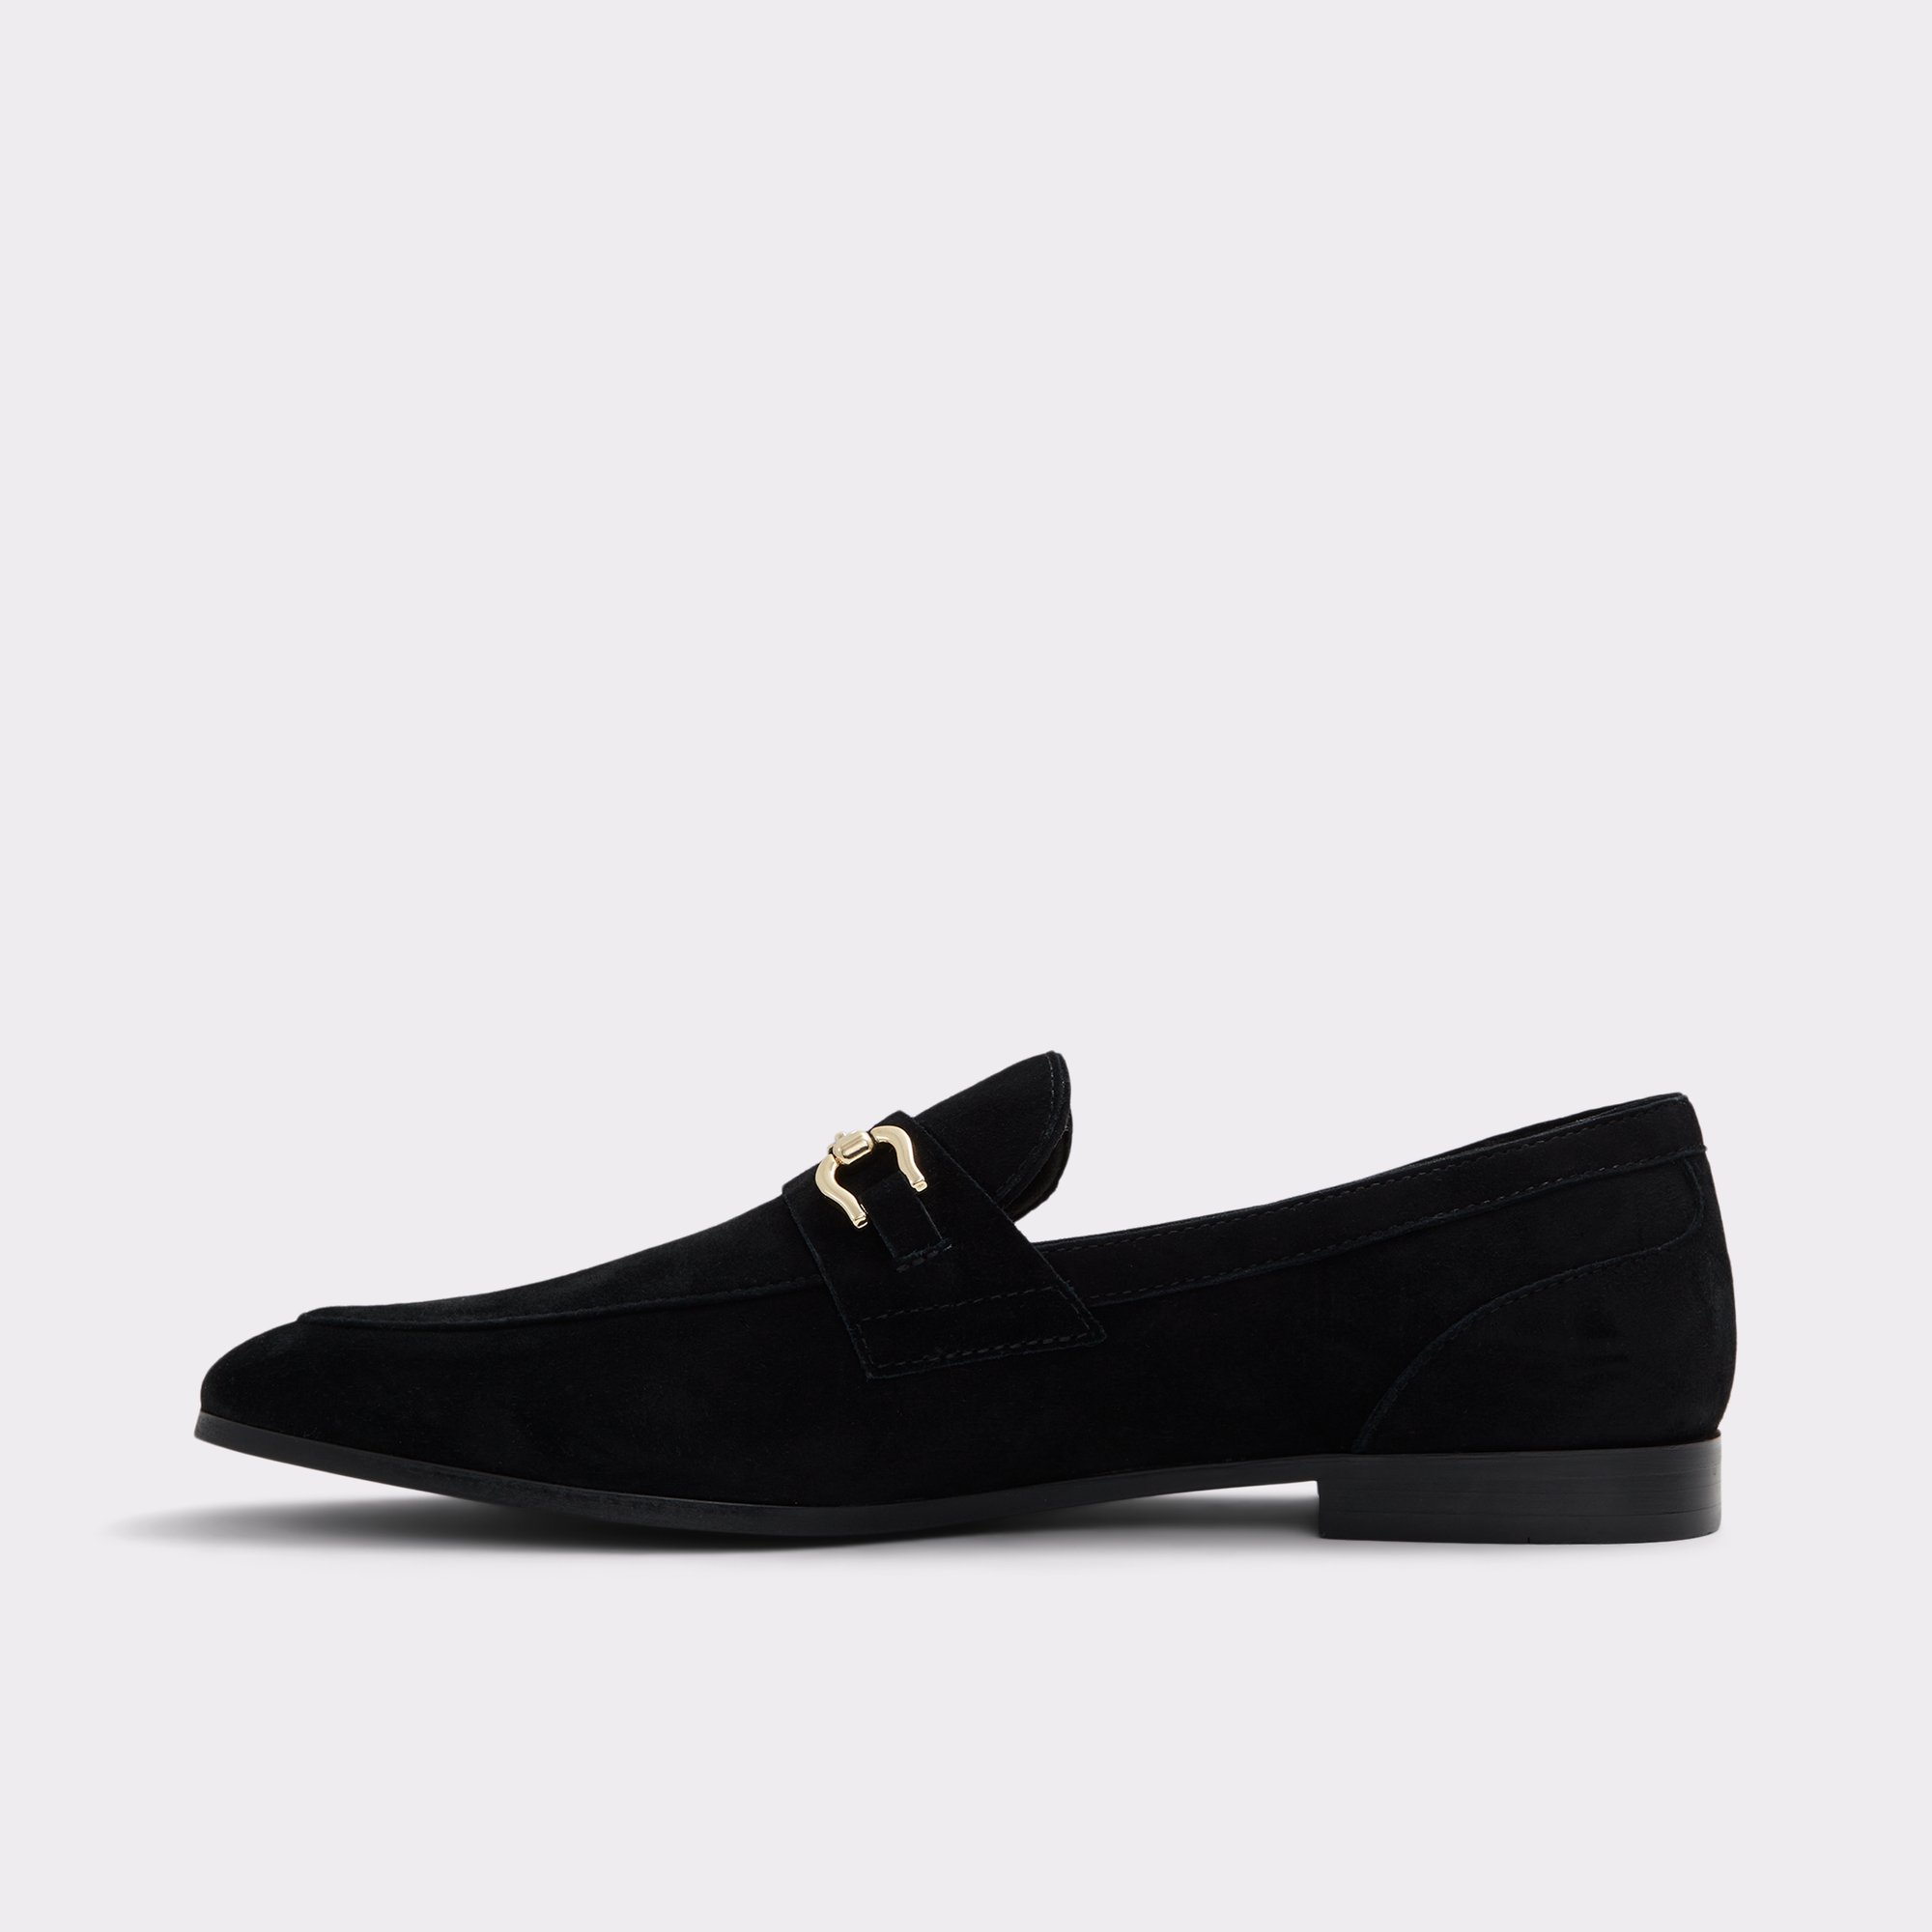 Marinho Black Leather Suede Men's Loafers & Slip-Ons | ALDO US